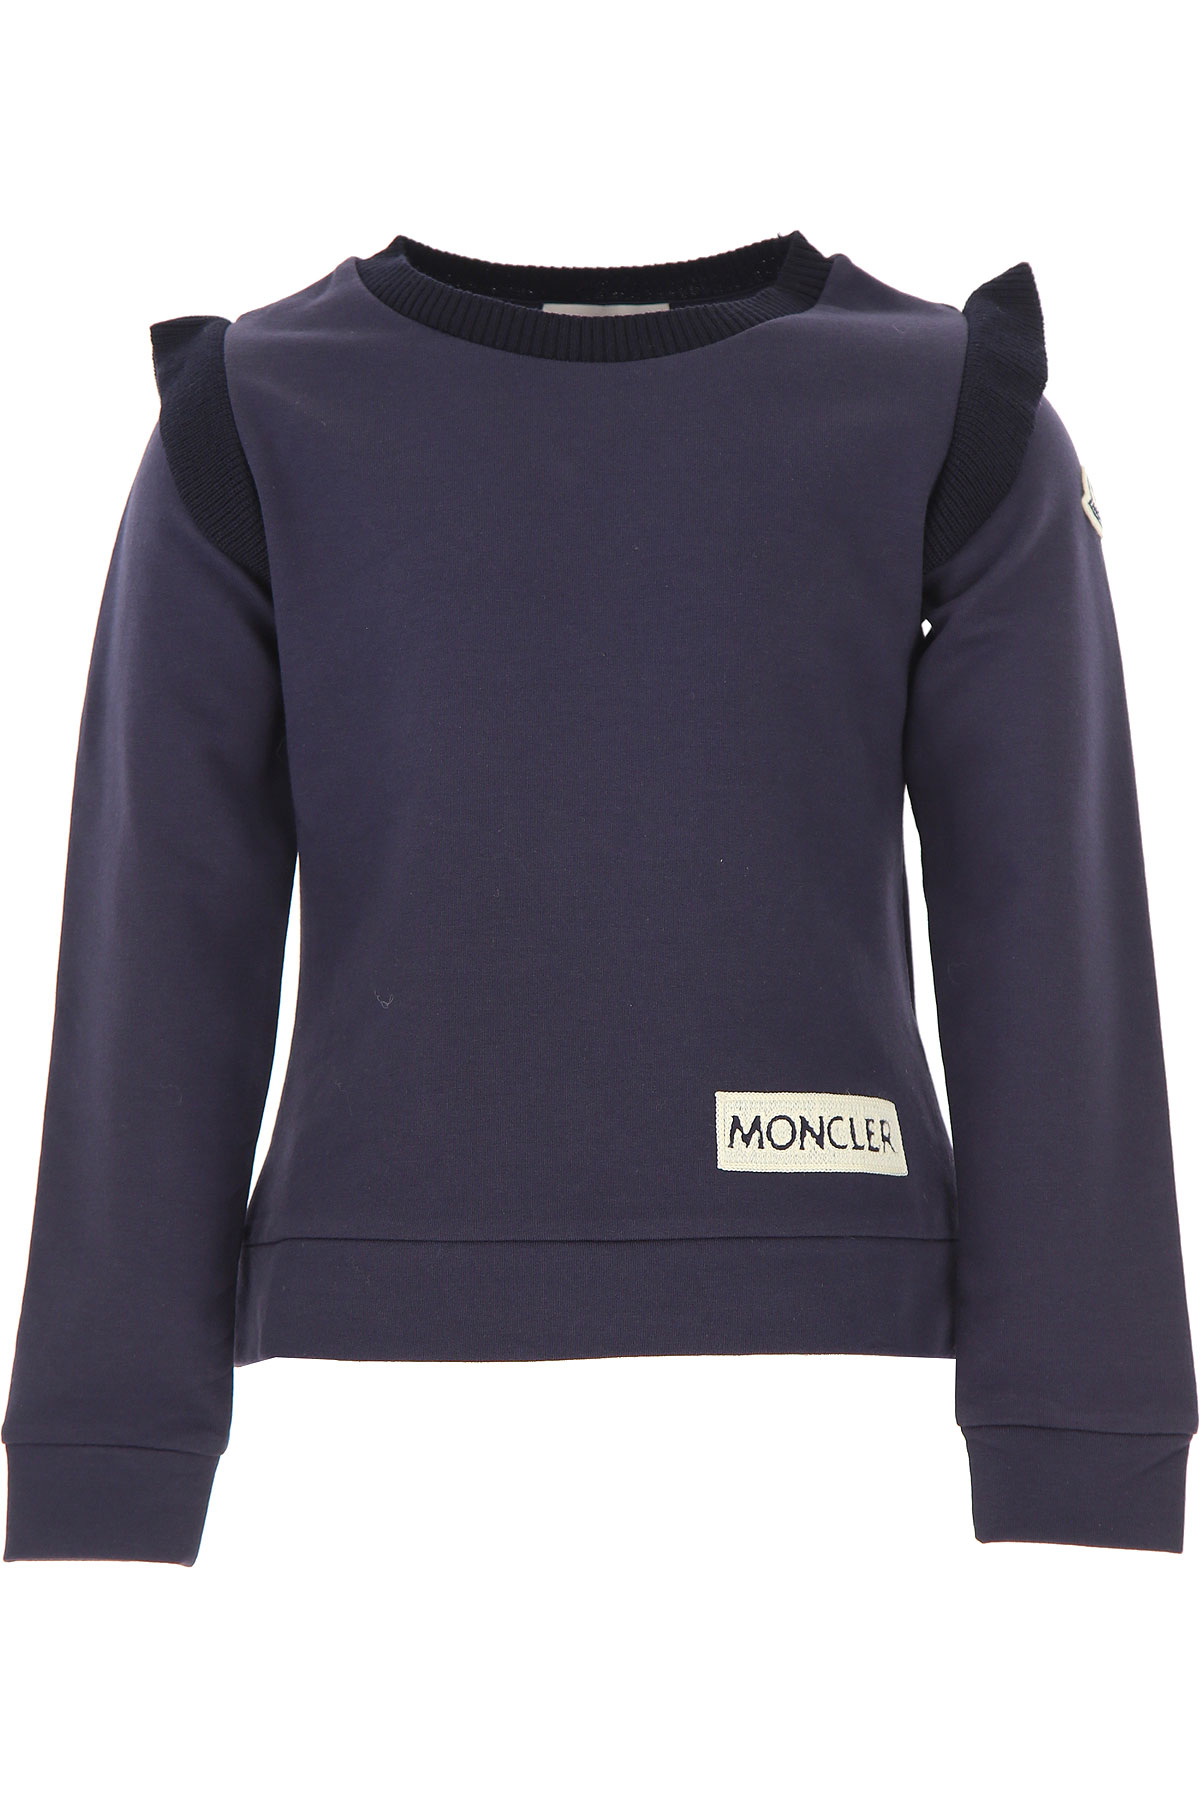 Moncler Kinder Sweatshirt & Kapuzenpullover für Mädchen Günstig im Outlet Sale, Marine blau, Baumwolle, 2017, 4Y 5Y 6Y